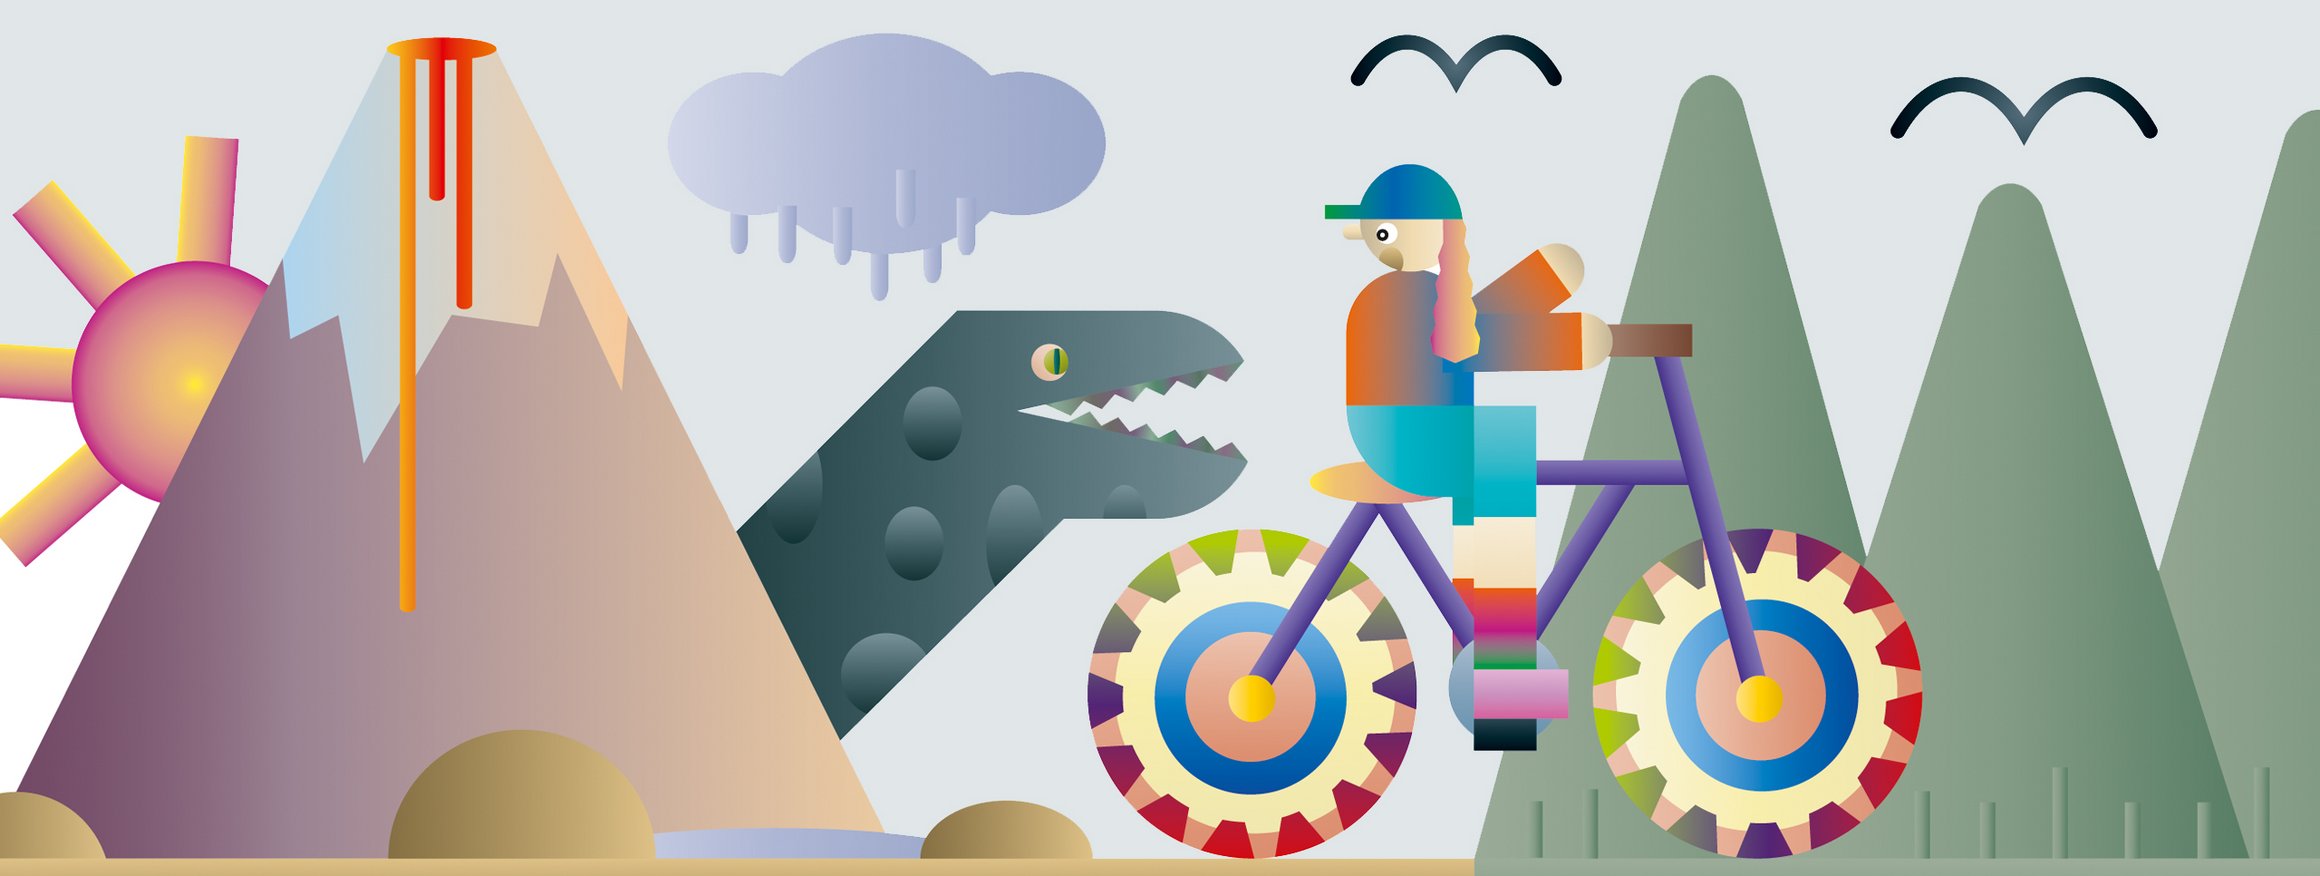 Die Illustration zeigt einen Radfahrer, der erschrickt, weil plötzlich ein Tyrannossaurus Rex hinter ihm auftaucht